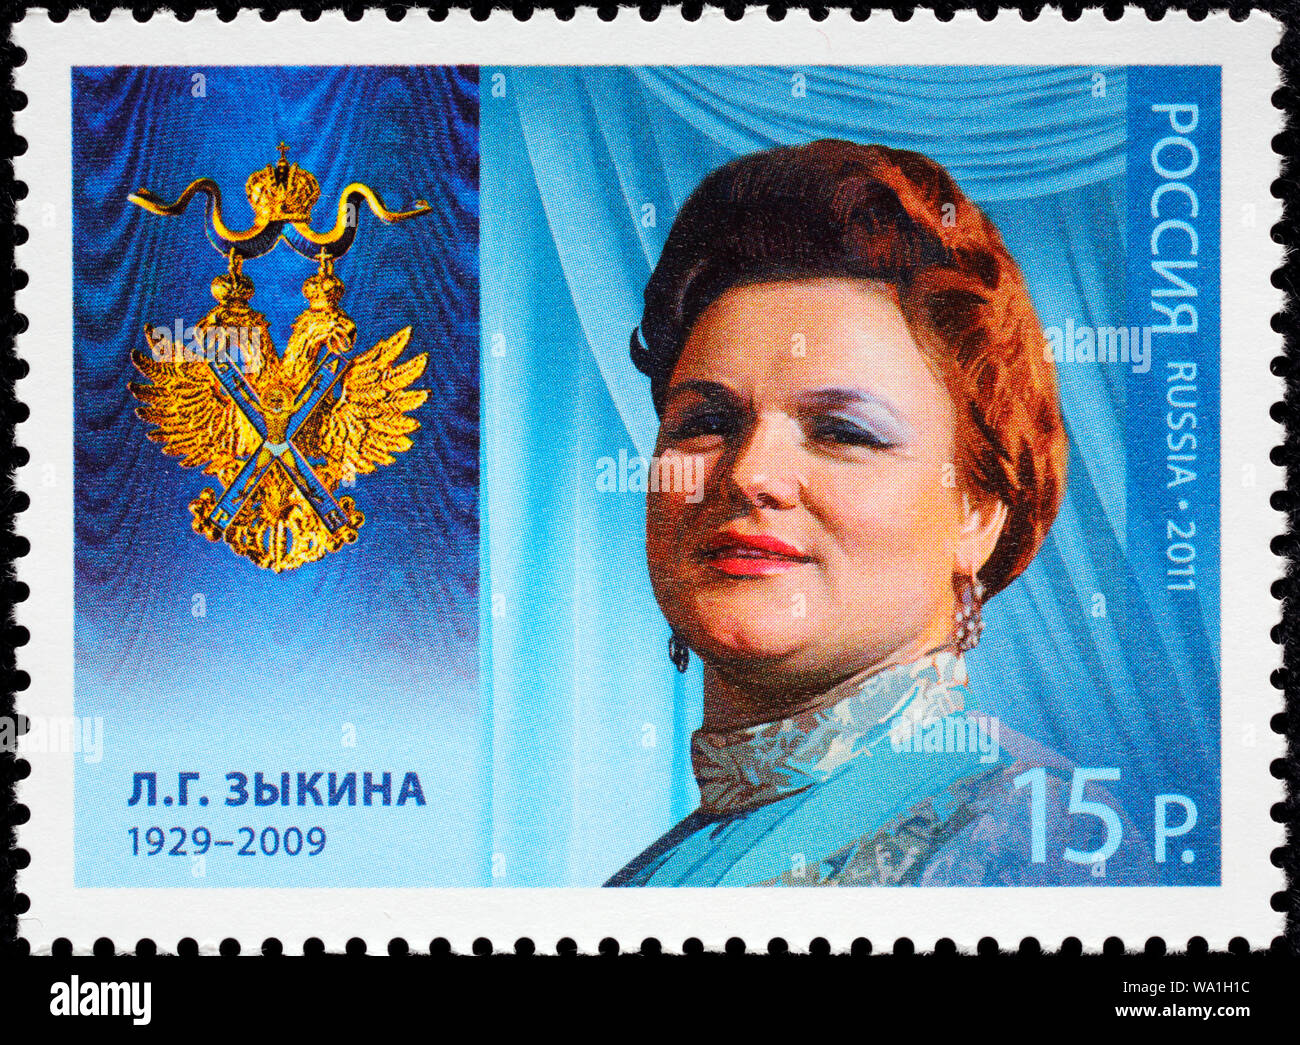 Lyudmila Zykina (1929-2009), cantante folk, cavaliere dell'Ordine di Sant'Andrea, francobollo, Russia, URSS, 2011 Foto Stock